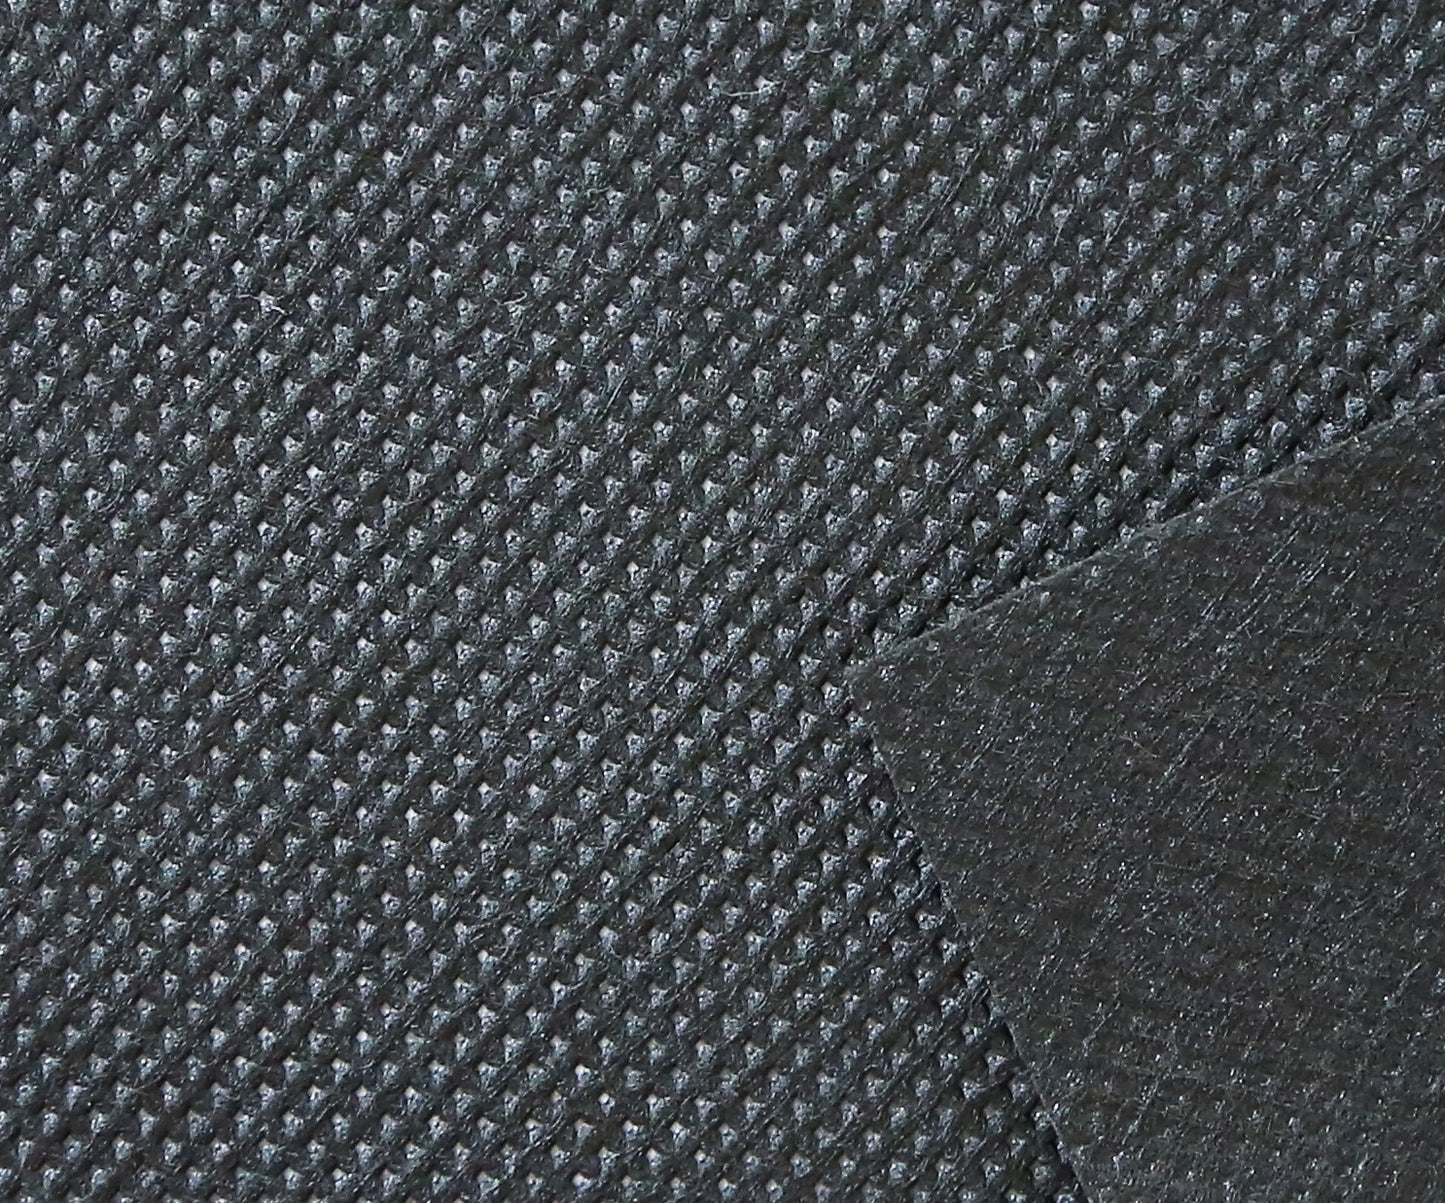 2 oz polyspun fabric texture